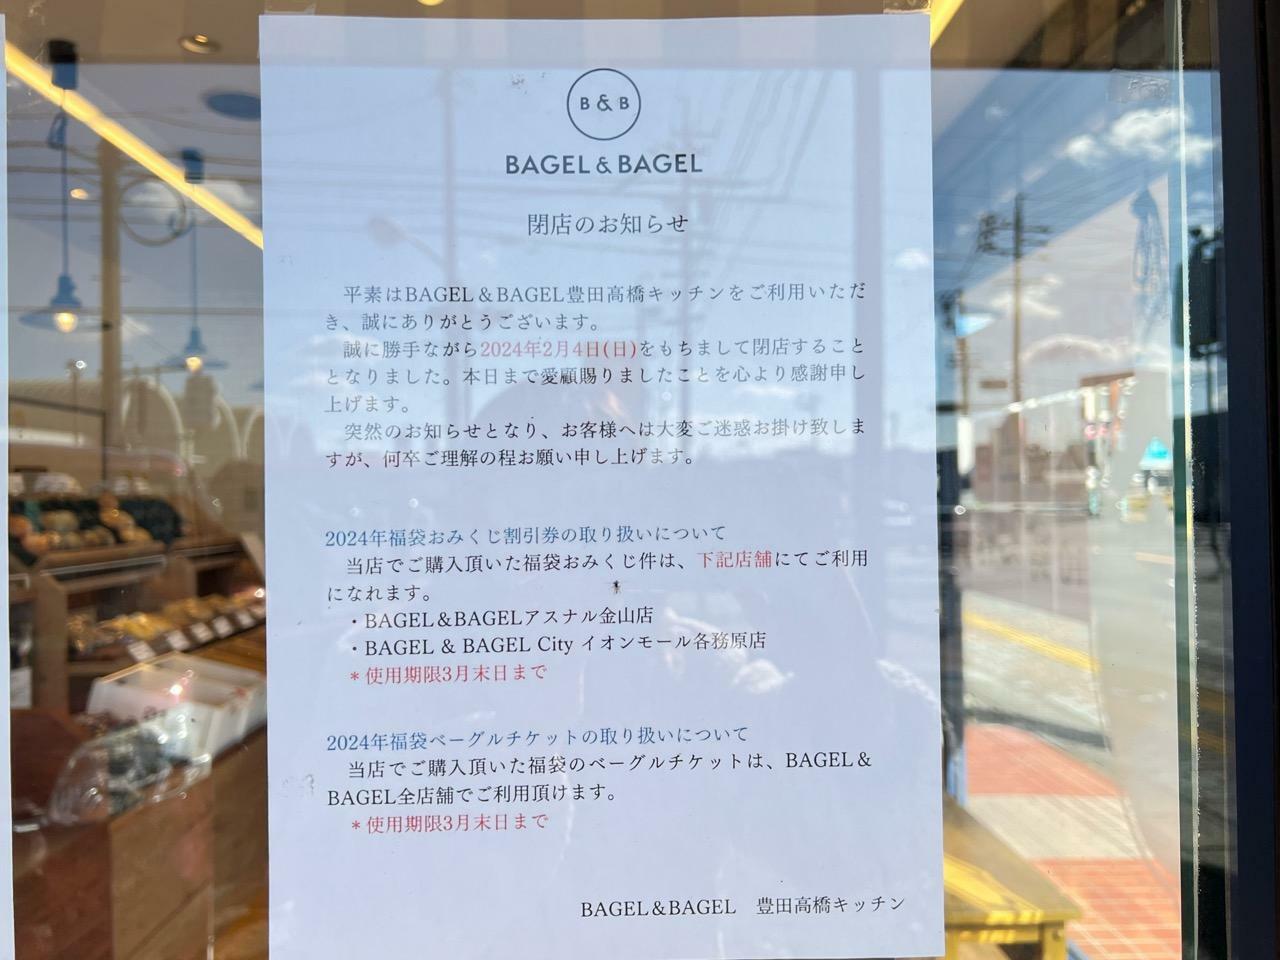 「BAGLE&BAGLE 高橋キッチン」閉店のお知らせ